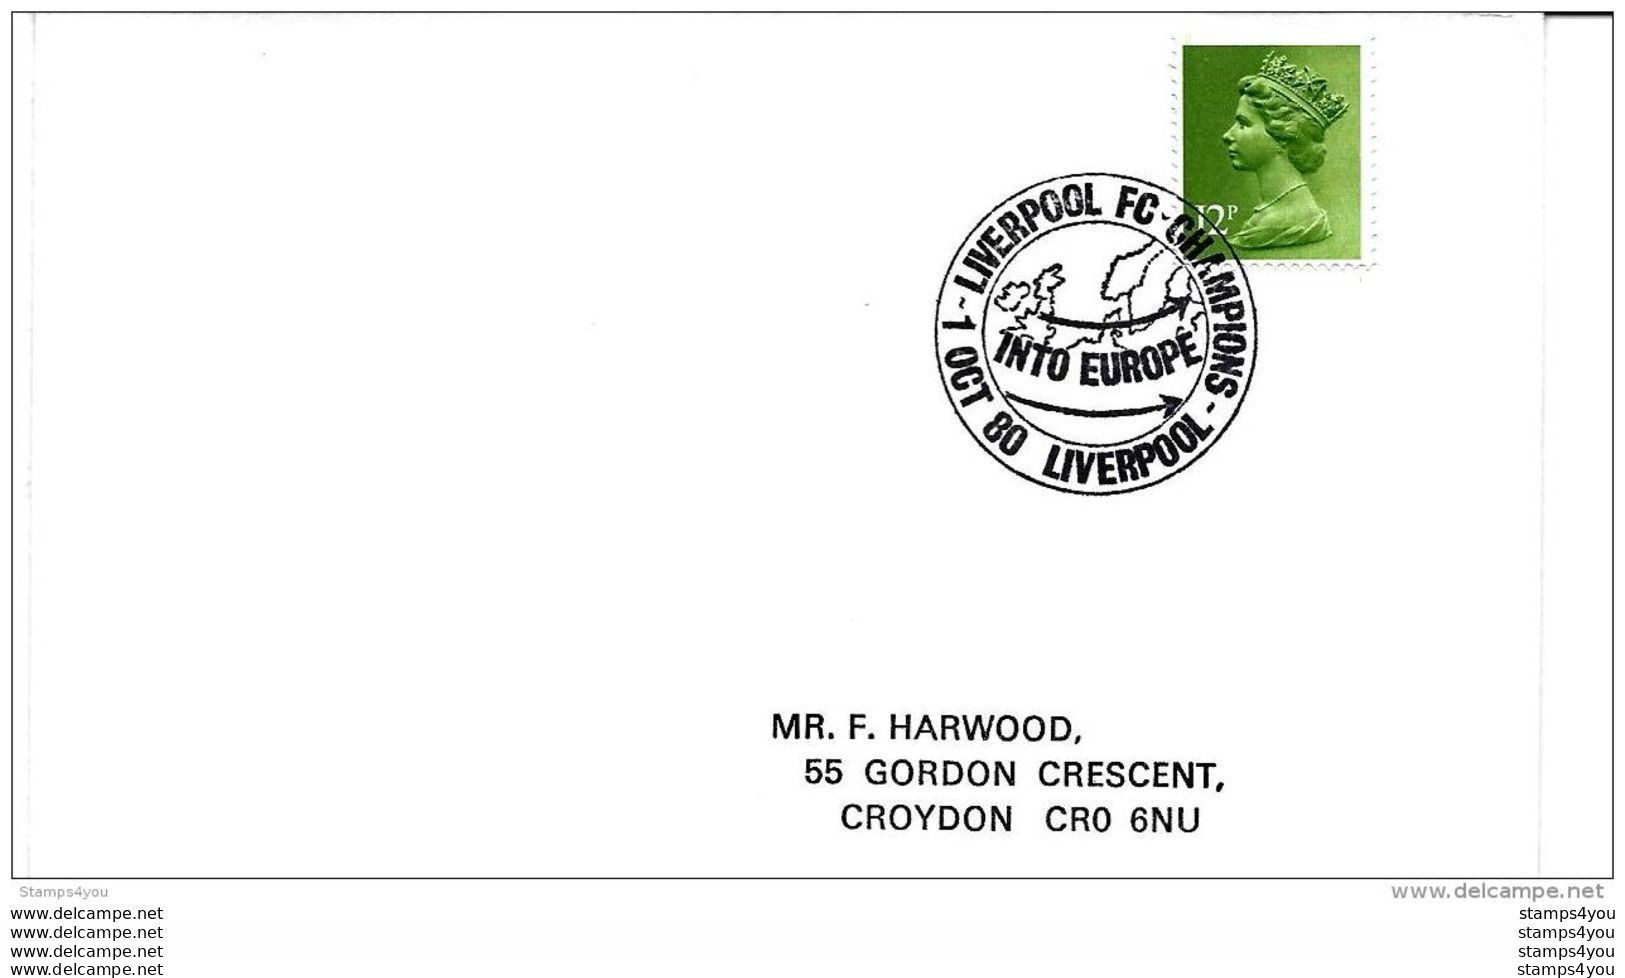 119 - 72 - Enveloppe Anglaise Avec Oblit Spéciale  "Liverpool Into Europe 1980" - Clubs Mythiques